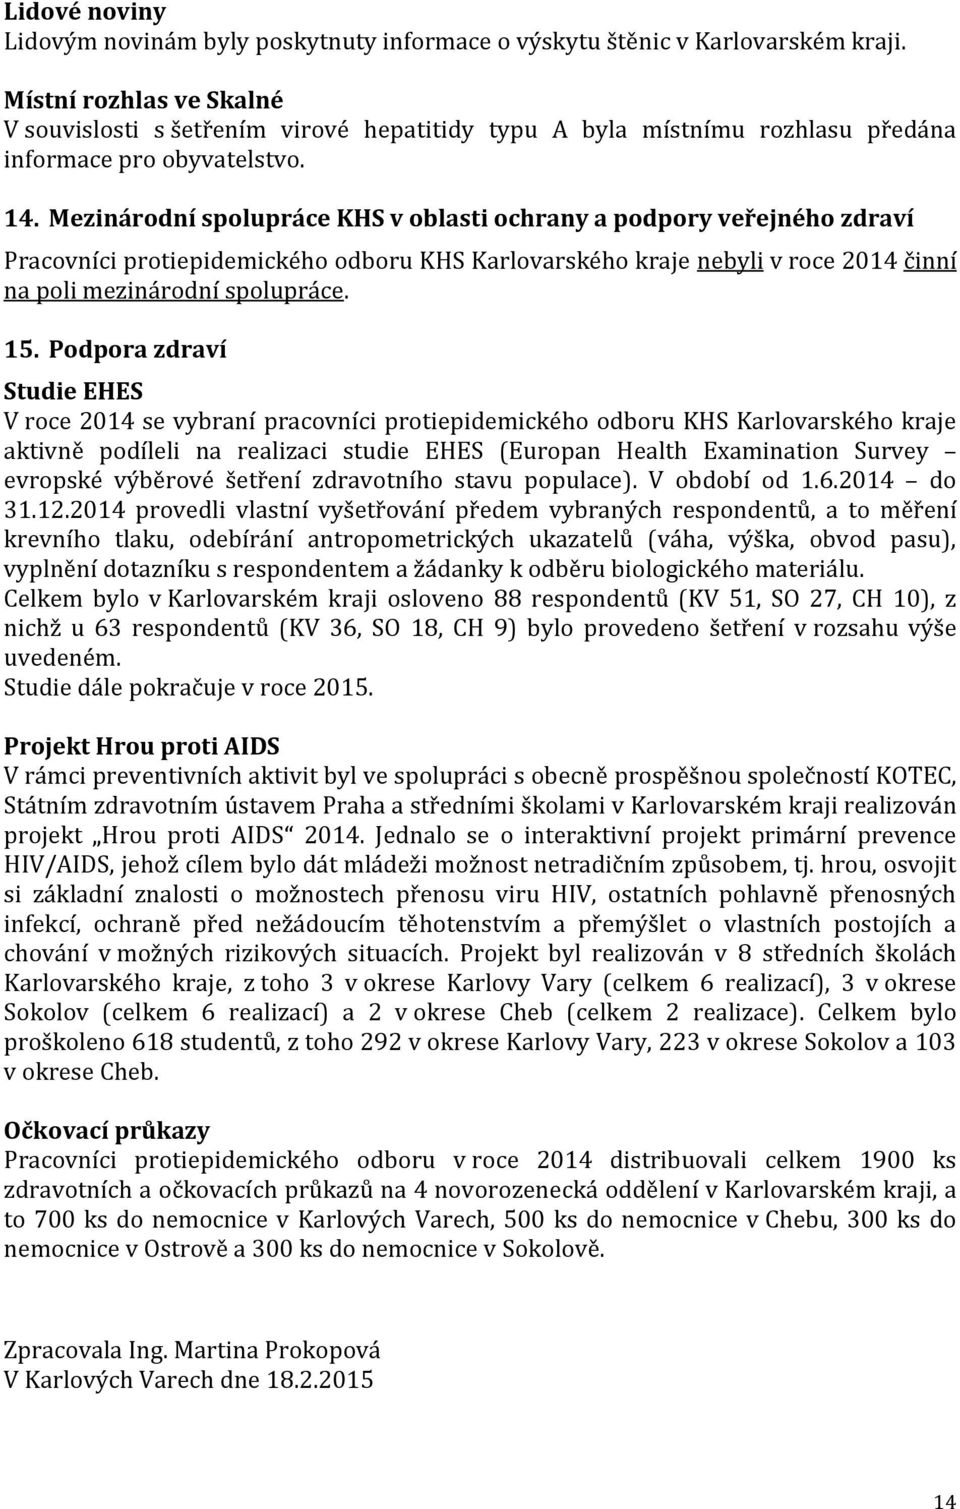 Mezinárodní spolupráce KHS v oblasti ochrany a podpory veřejného zdraví Pracovníci protiepidemického odboru KHS Karlovarského kraje nebyli v roce 2014 činní na poli mezinárodní spolupráce. 15.